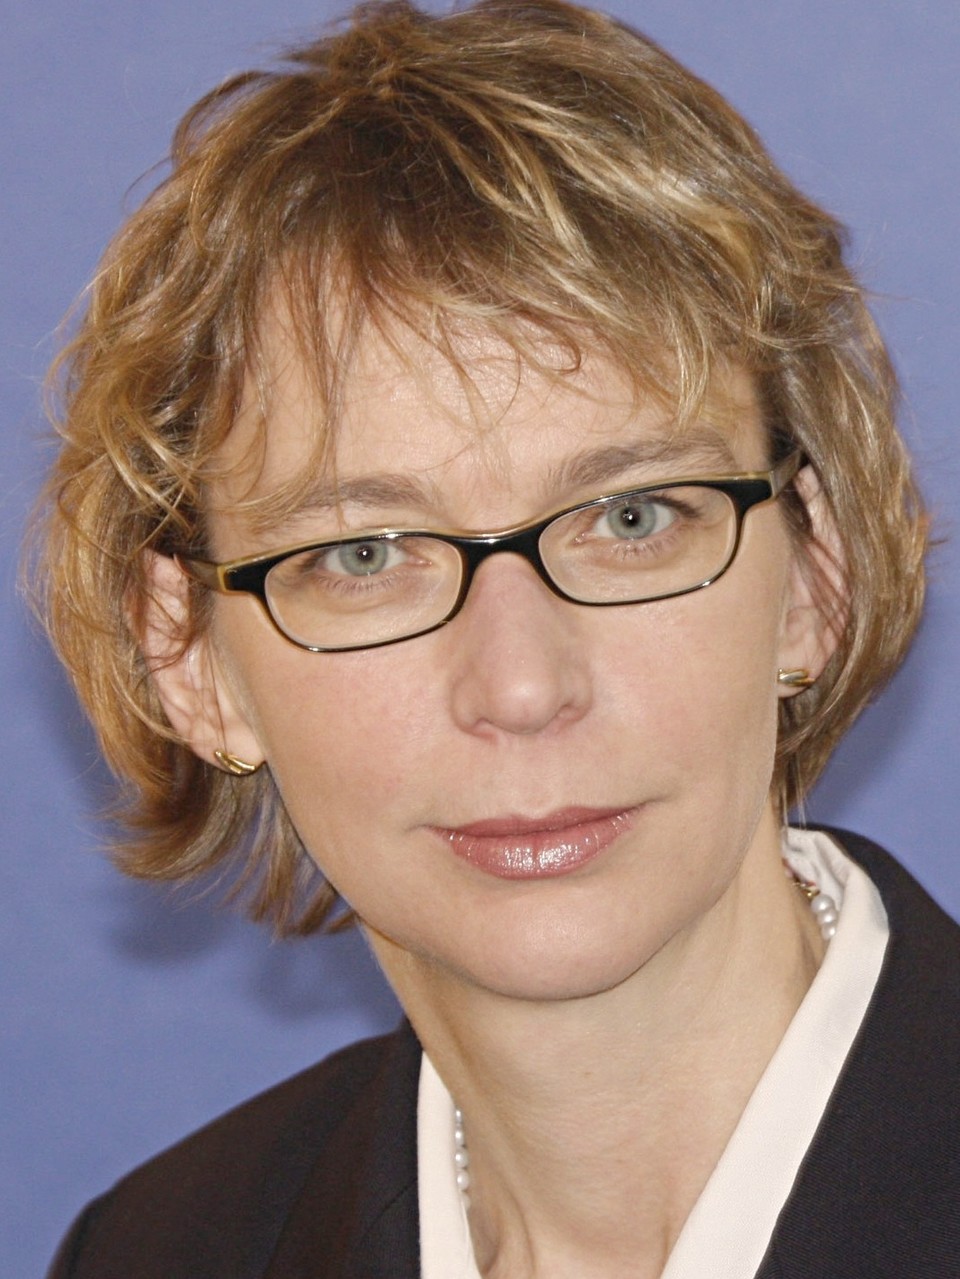 Linda Breitlauch ist Professorin für Game-Design und Studienleiterin an der Mediadesign Hochschule in Düsseldorf. Sie forscht und lehrt seit 2000 zur Dramaturgie von Computerspielen, der Konzeption und Entwicklung von Computerspiel-Geschichten, zu E-Learning-Anwendungen und Serious Games.